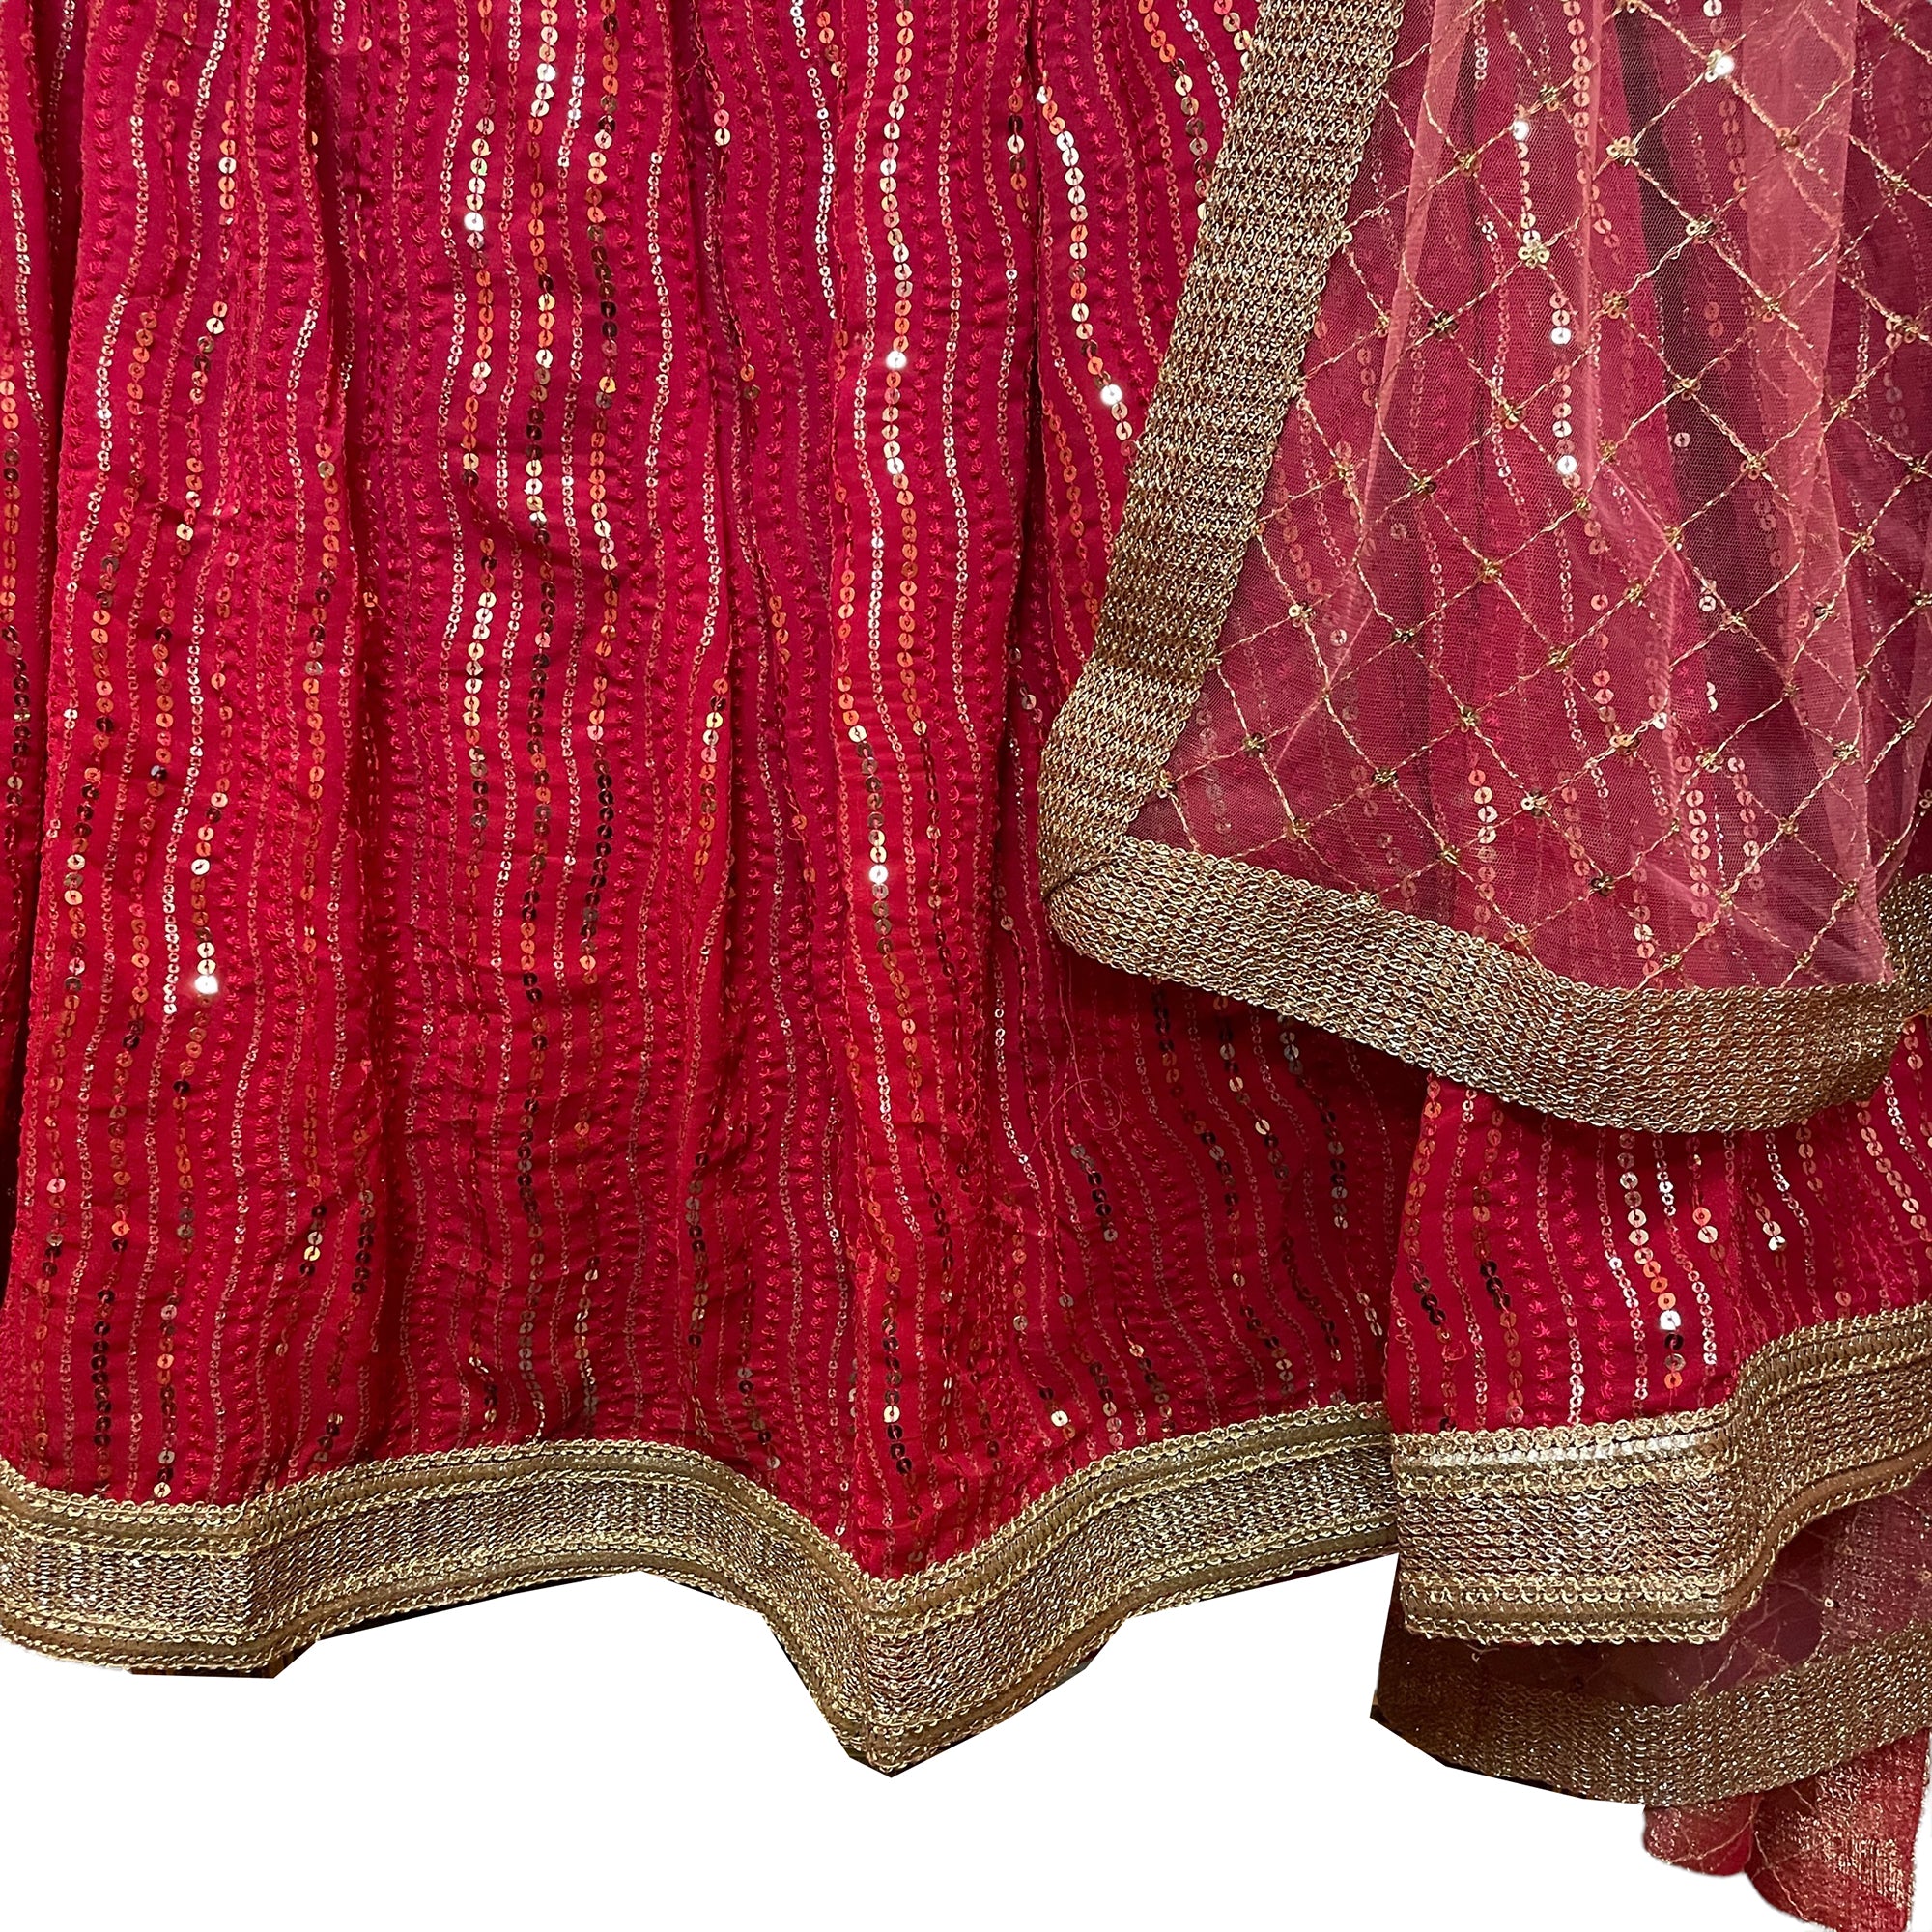 DT Plus Size Sequin Lehenga Sets-2Colors - Vintage India NYC